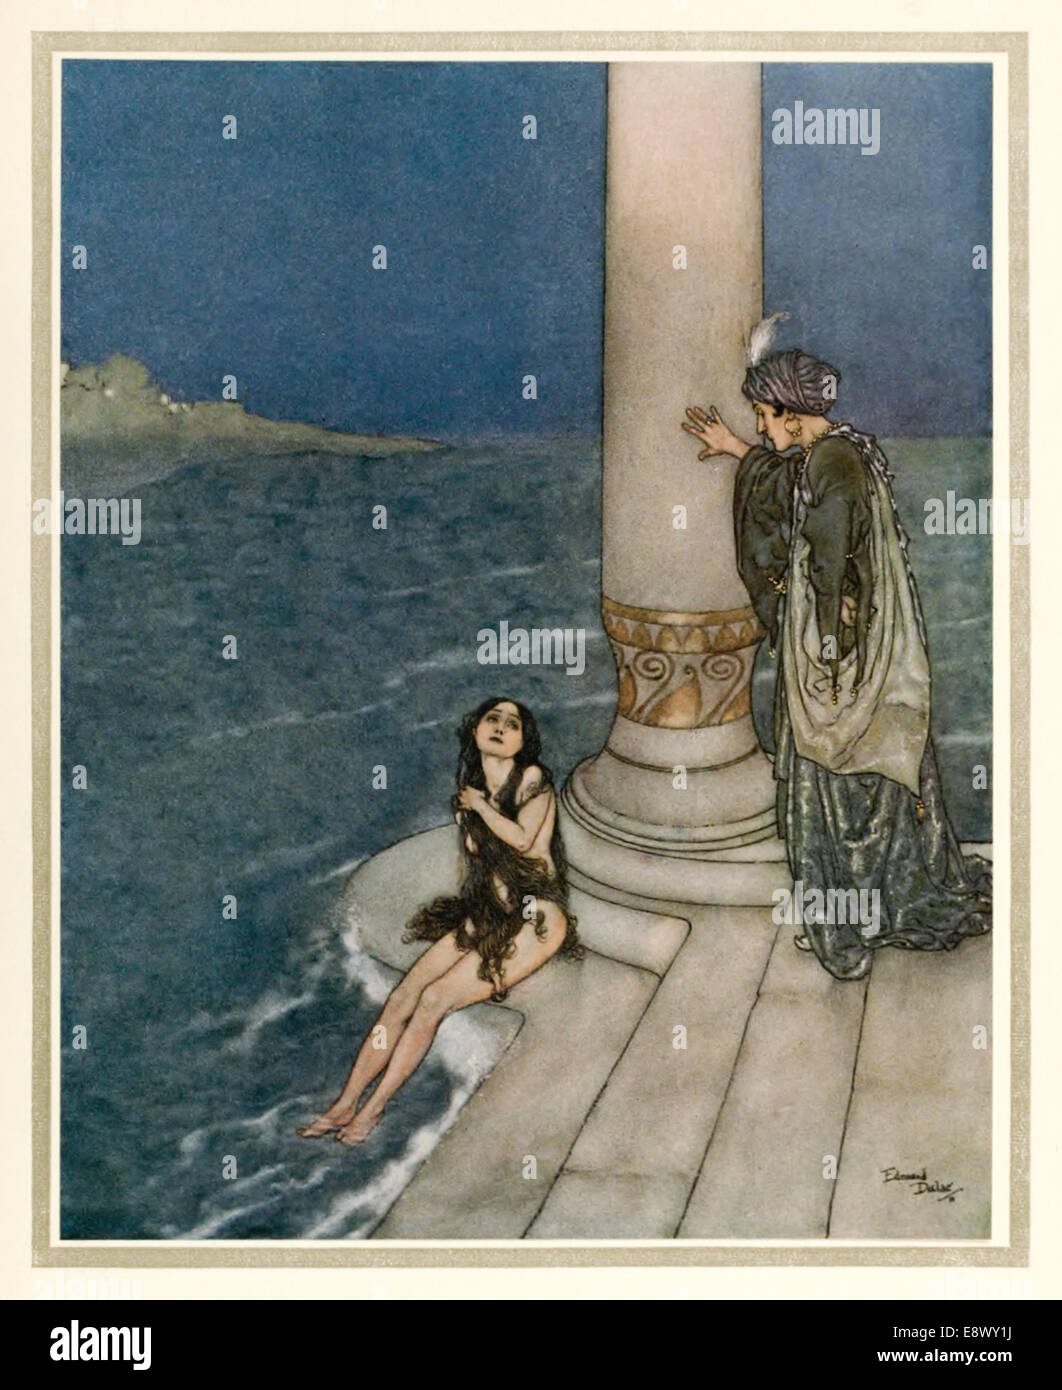 Kleine Meerjungfrau - Edmund Dulac (1882-1953) Illustration aus "Geschichten von Hans Andersen". Siehe Beschreibung für mehr Informationen. Stockfoto